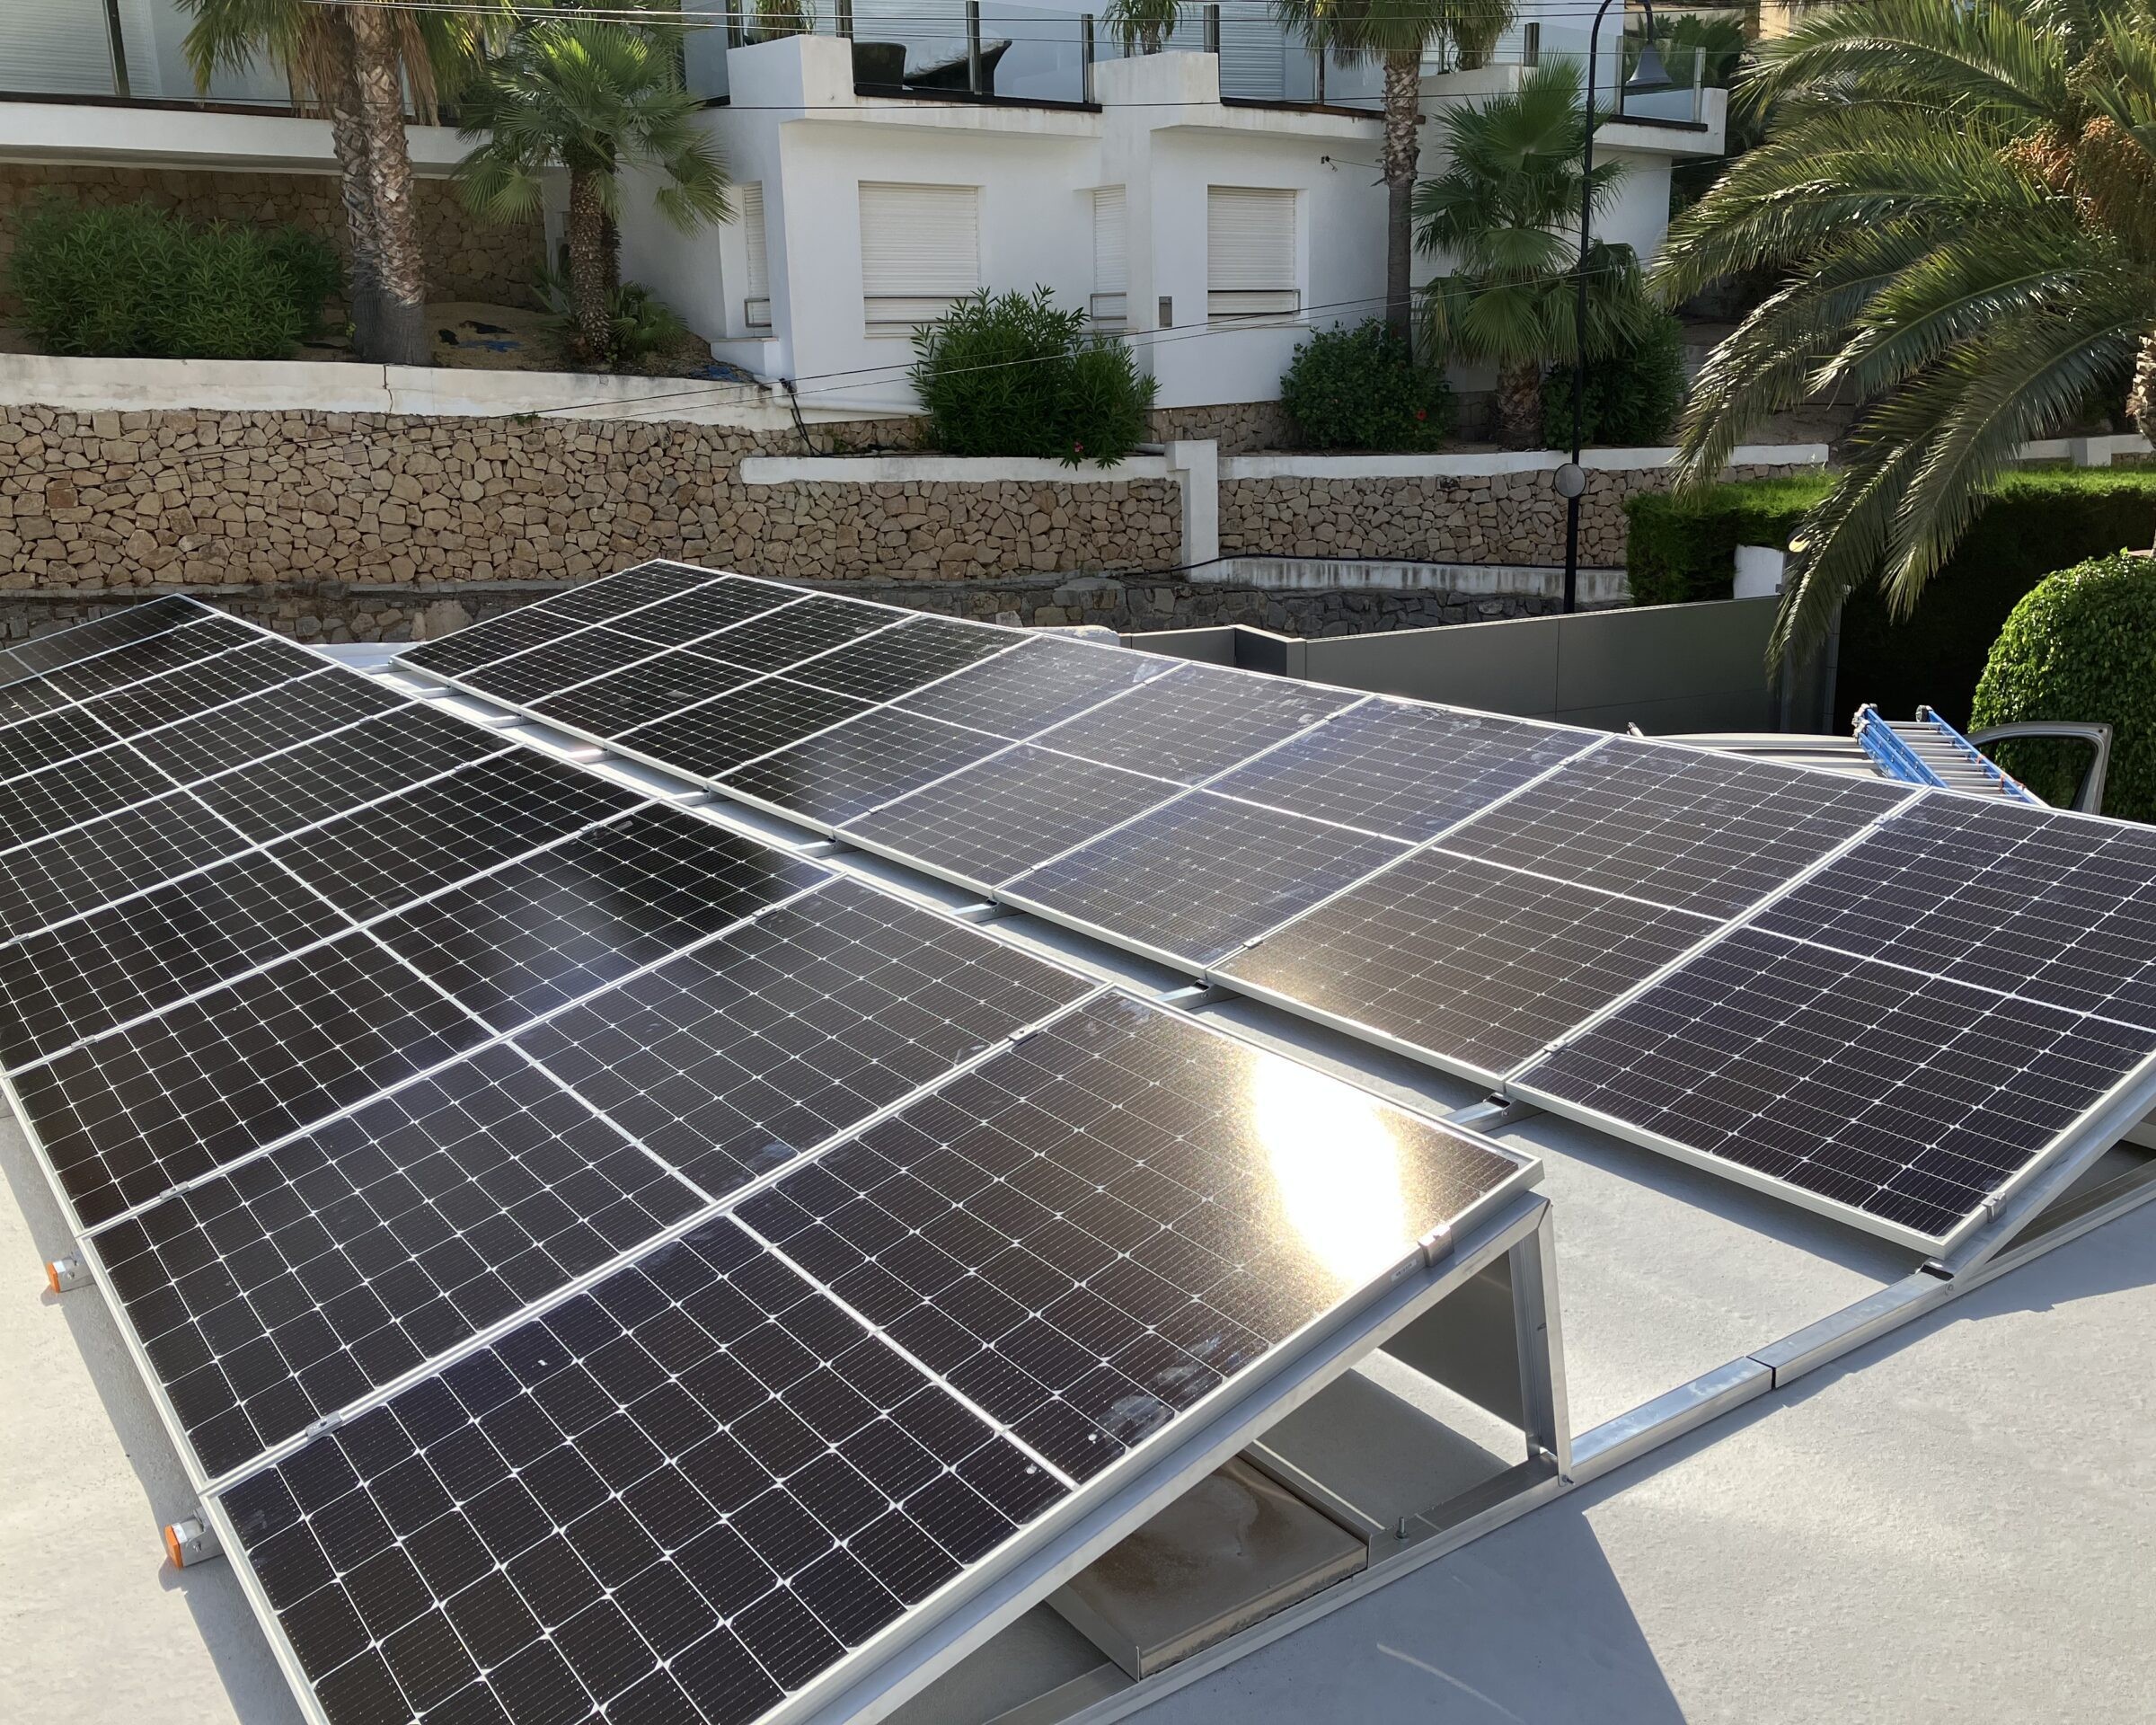 18x 385 wp Paneles Solares de JA, Altea, Alicante (Sistema híbrido)